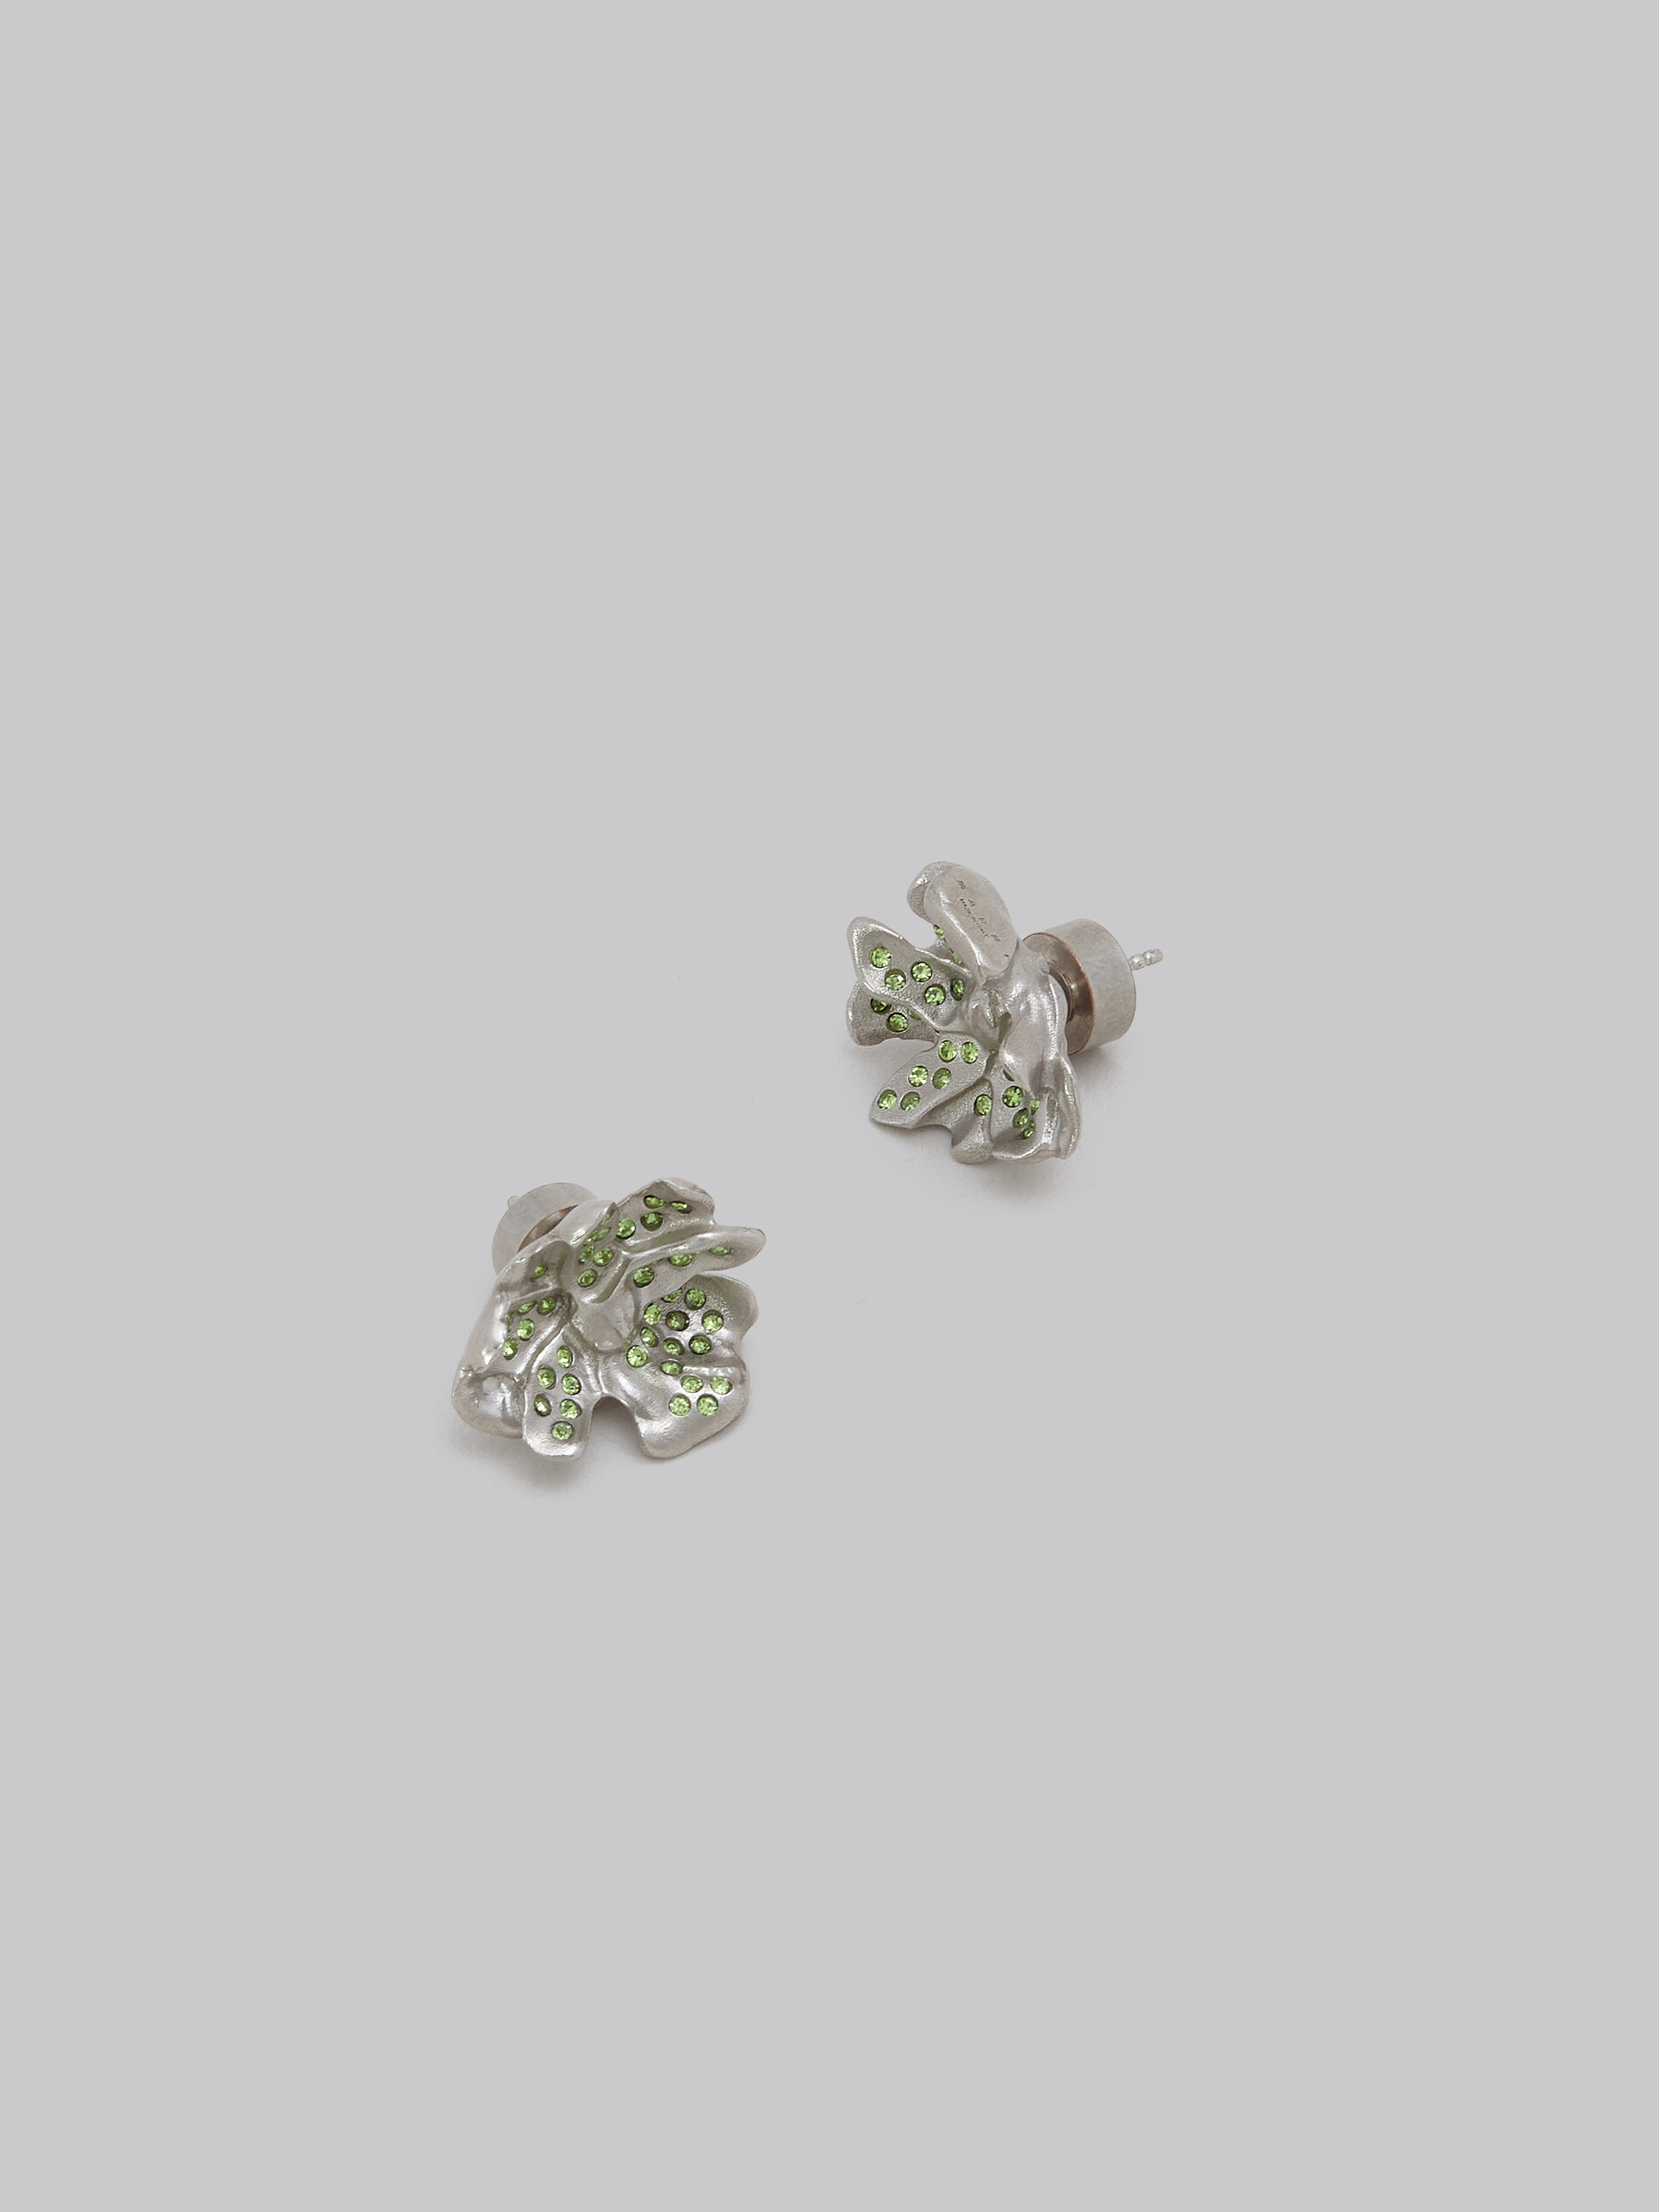 Metal flower stud earrings with blue crystals - Earrings - Image 4